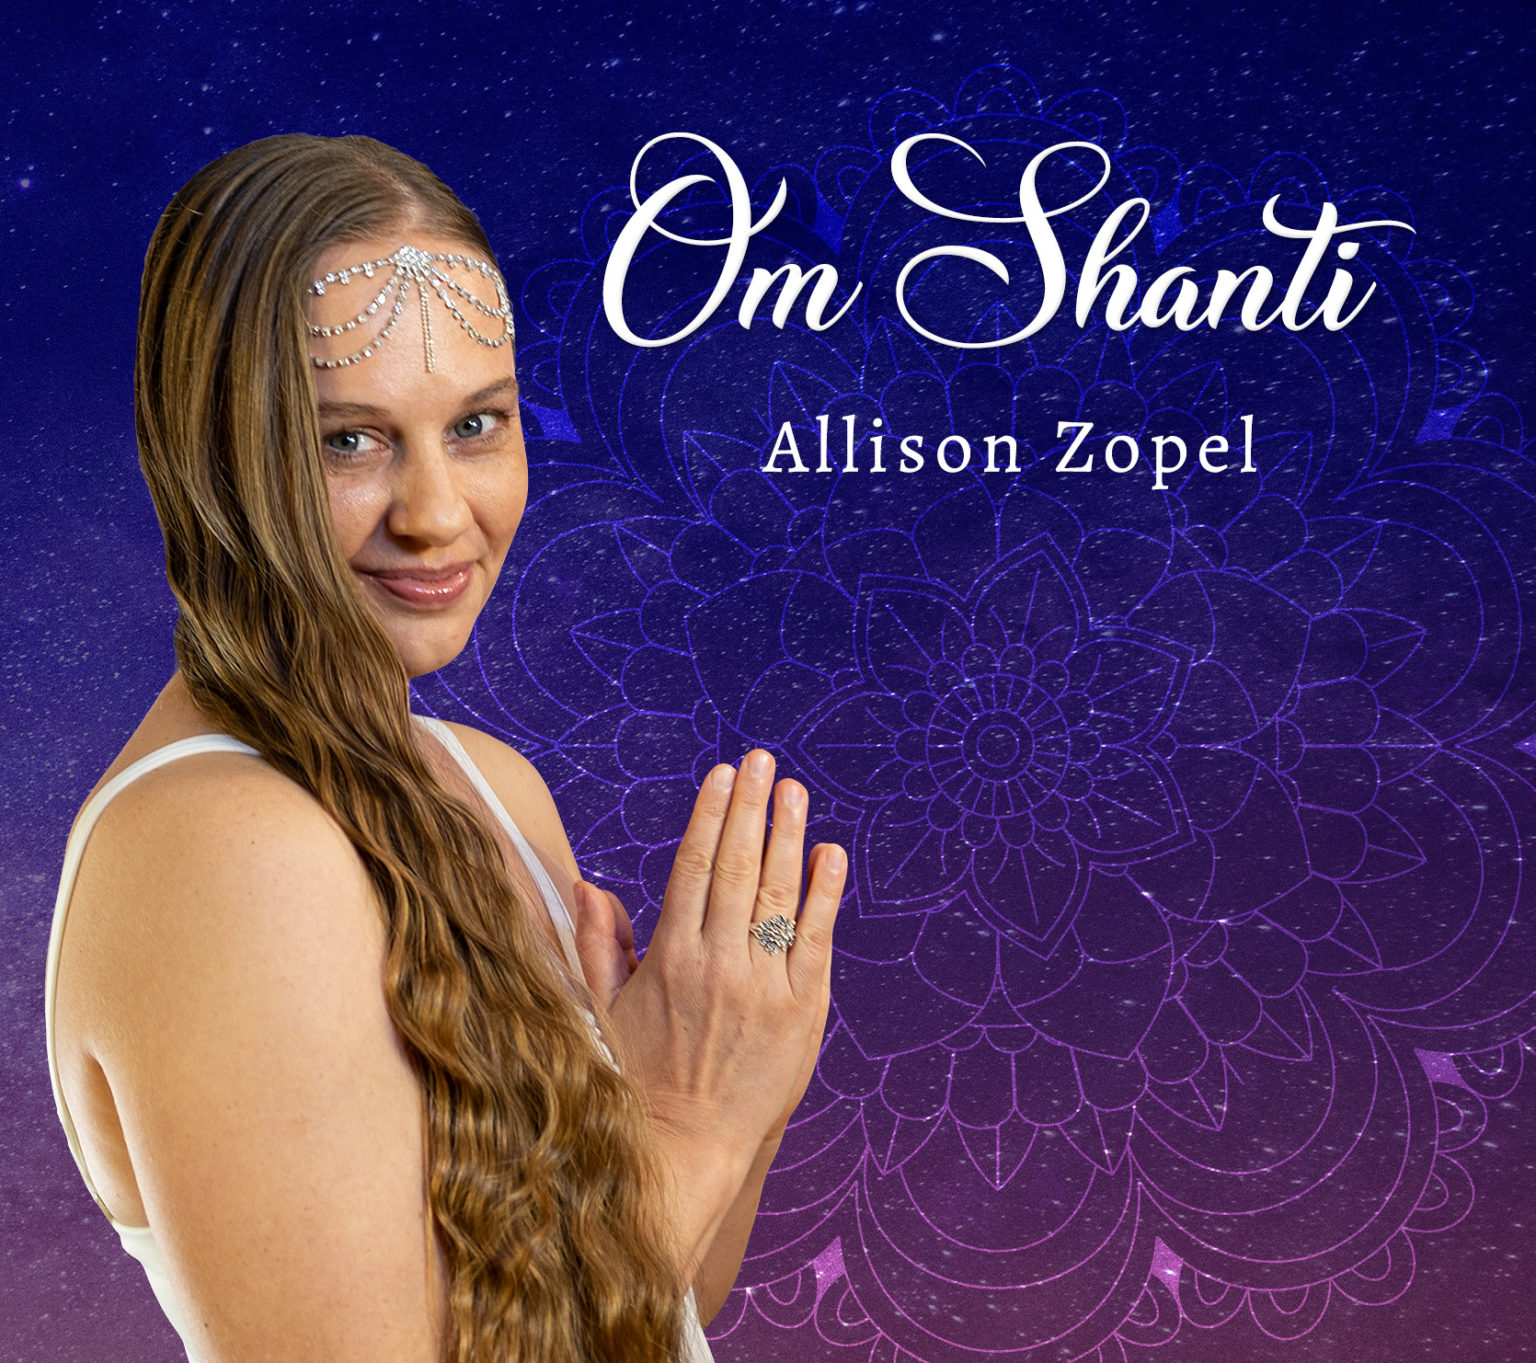 Om Shanti, Allison Zopel